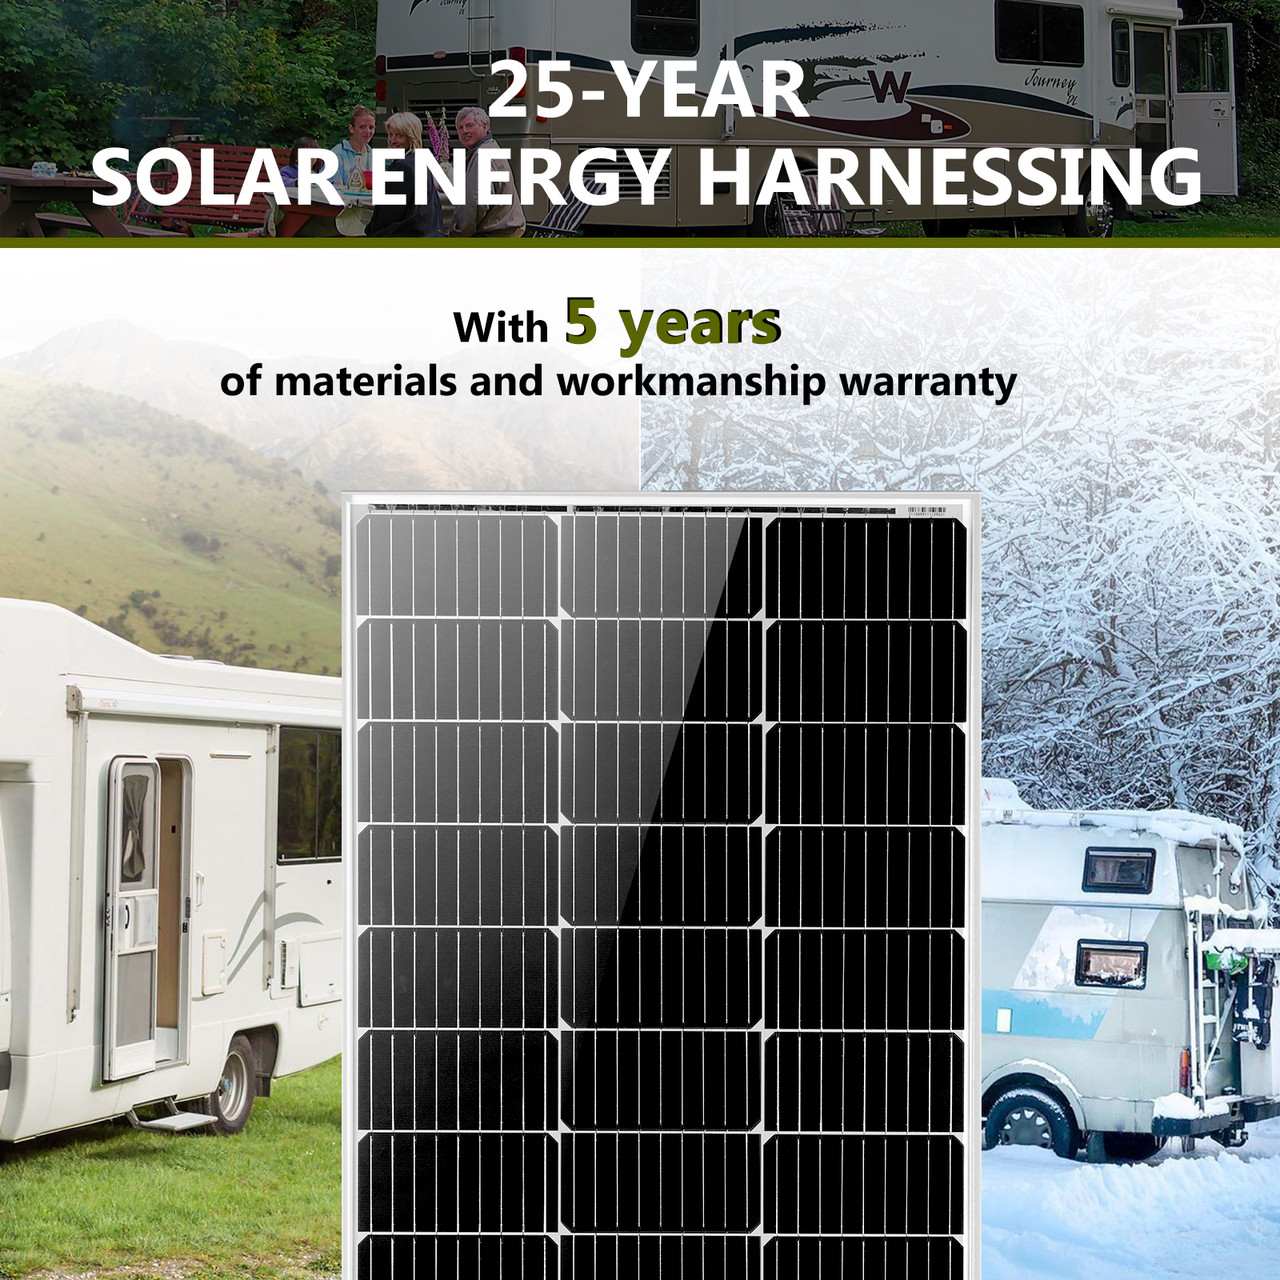 Kit solar de 12 V para instalación de isla PV para autocaravana, módulo  solar, regulador de carga, potencia: 400 W